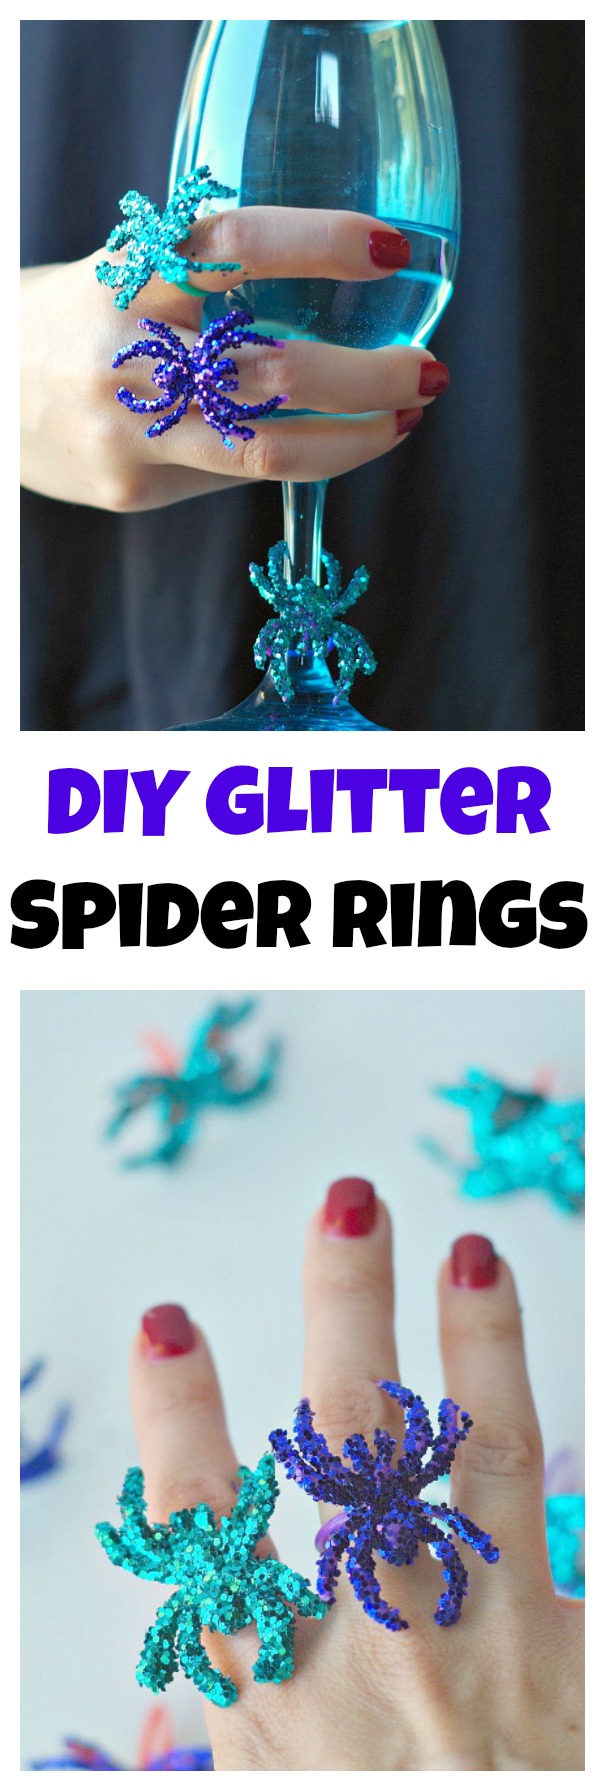 DIY Glitter Spider Rings for Halloween